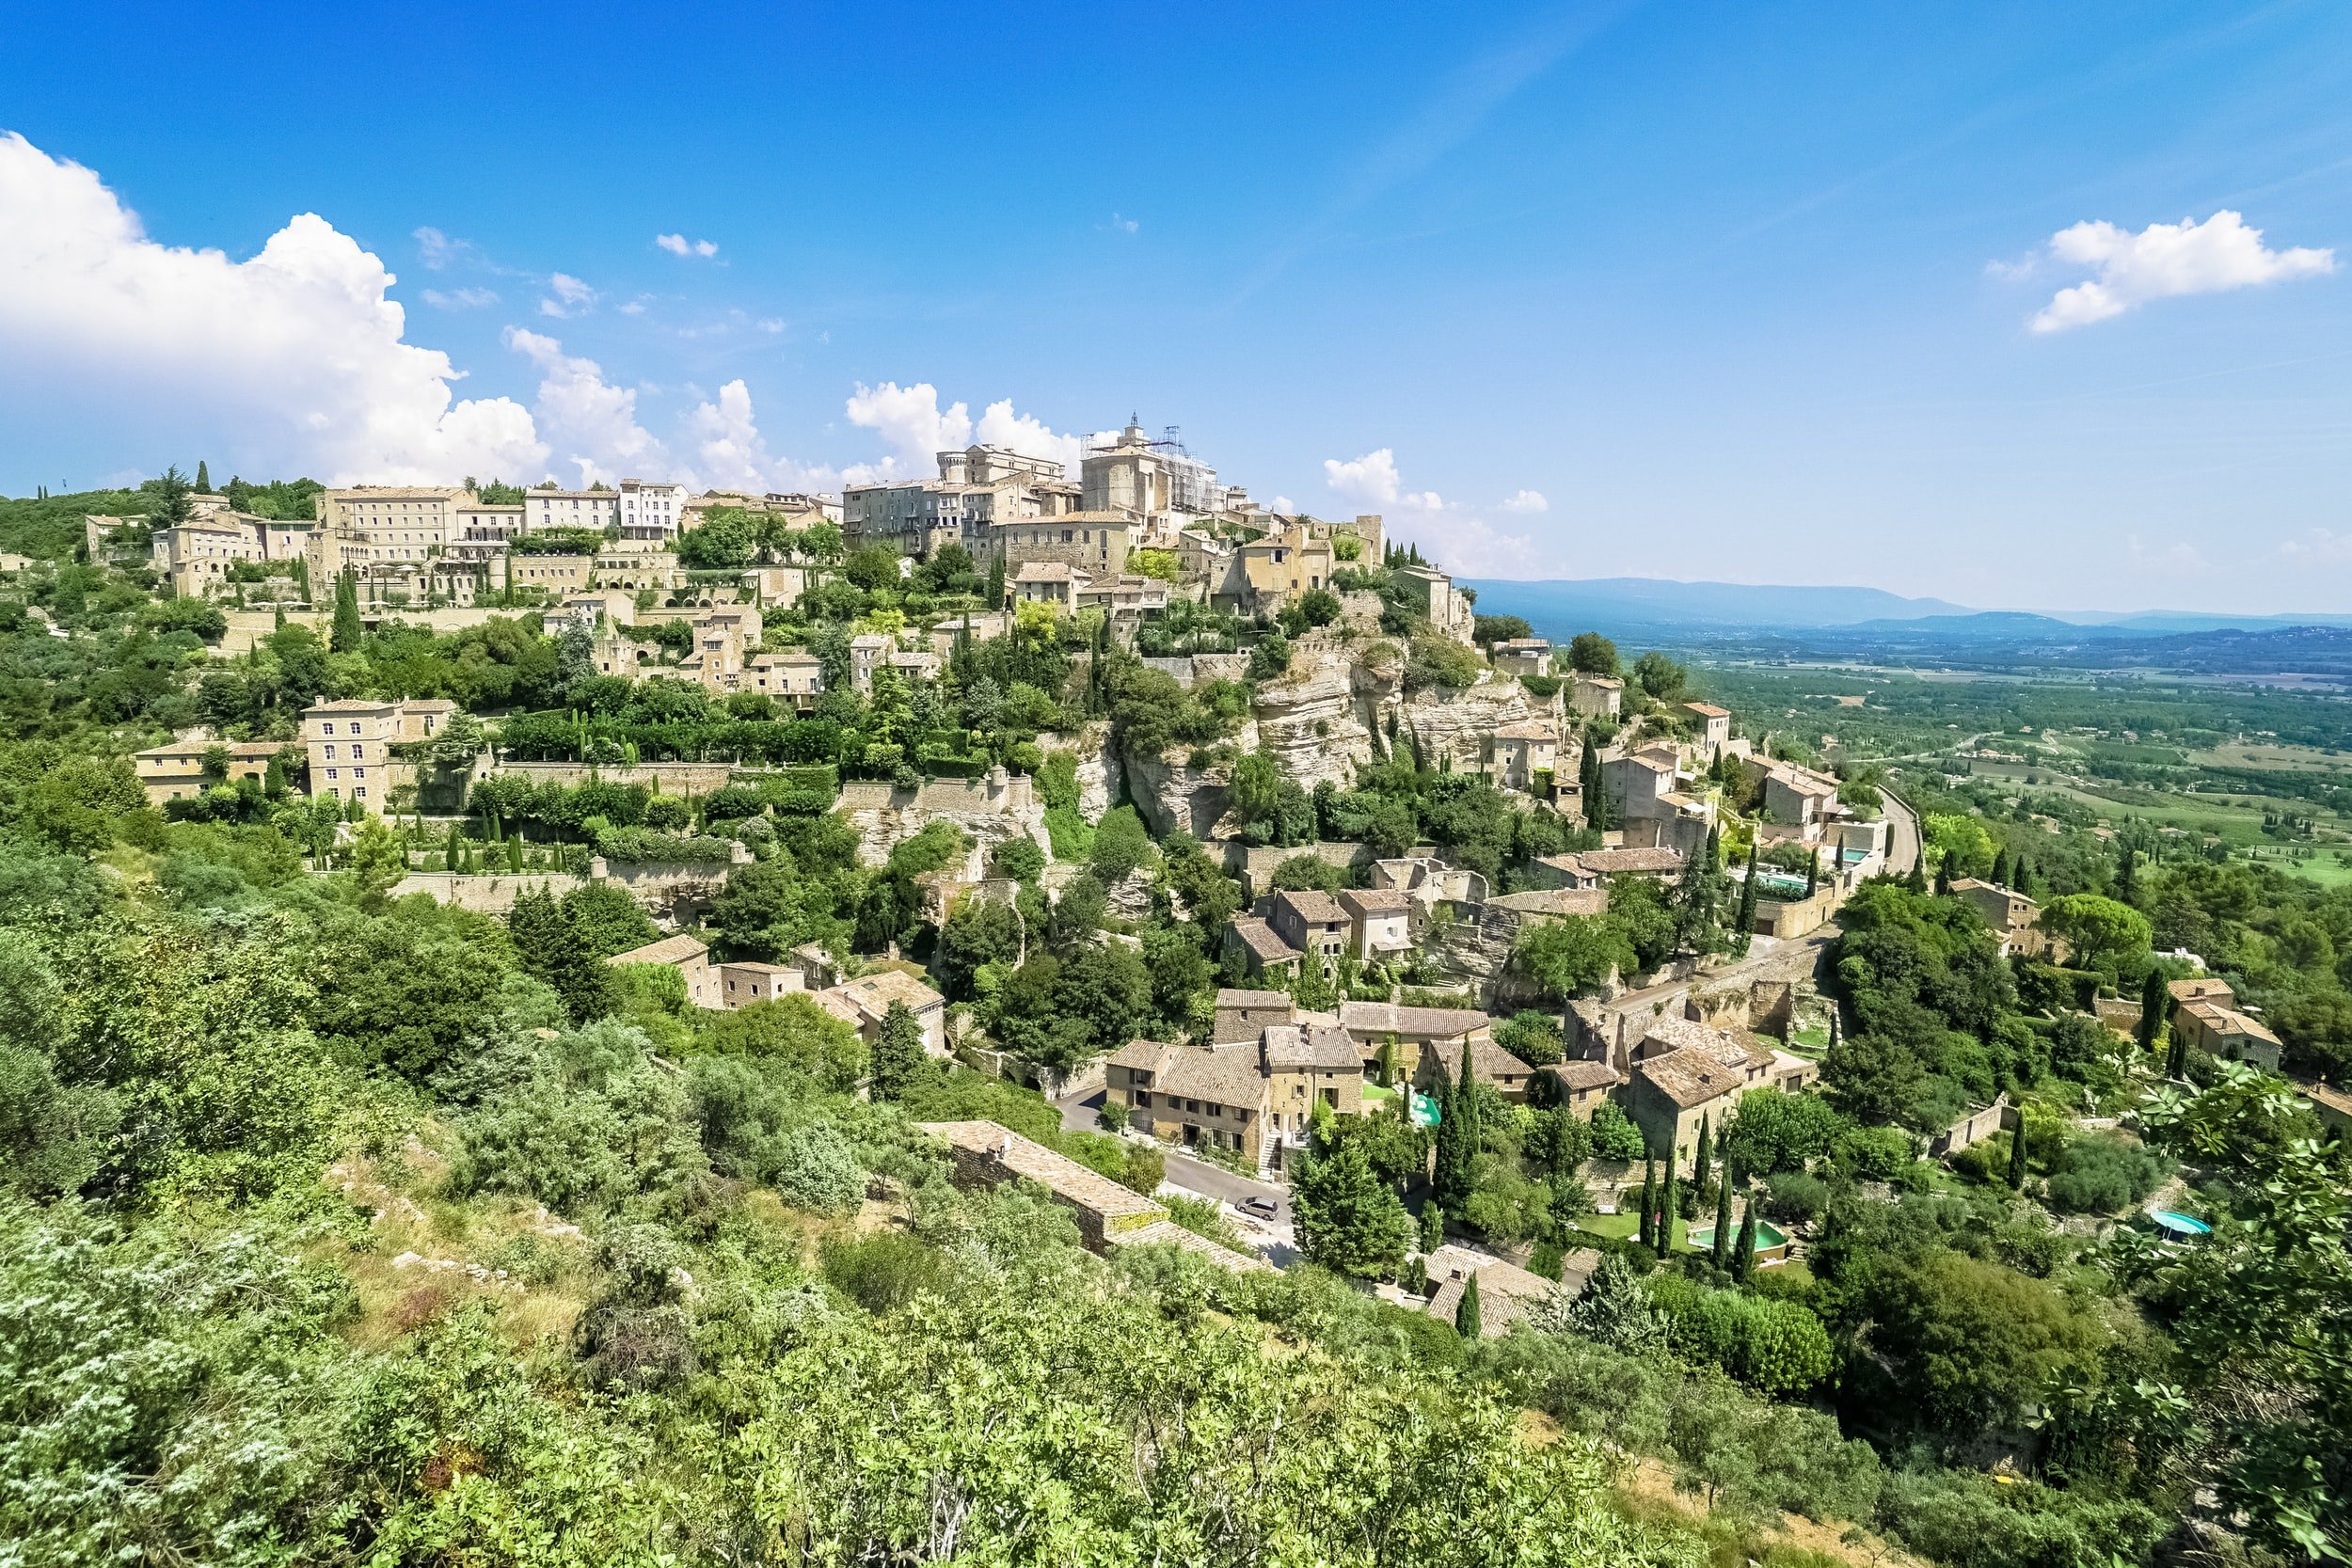 Frankrijk in de Provence ligt Gordes - een van de hooggelegen middeleeuws dorpen in de buurt